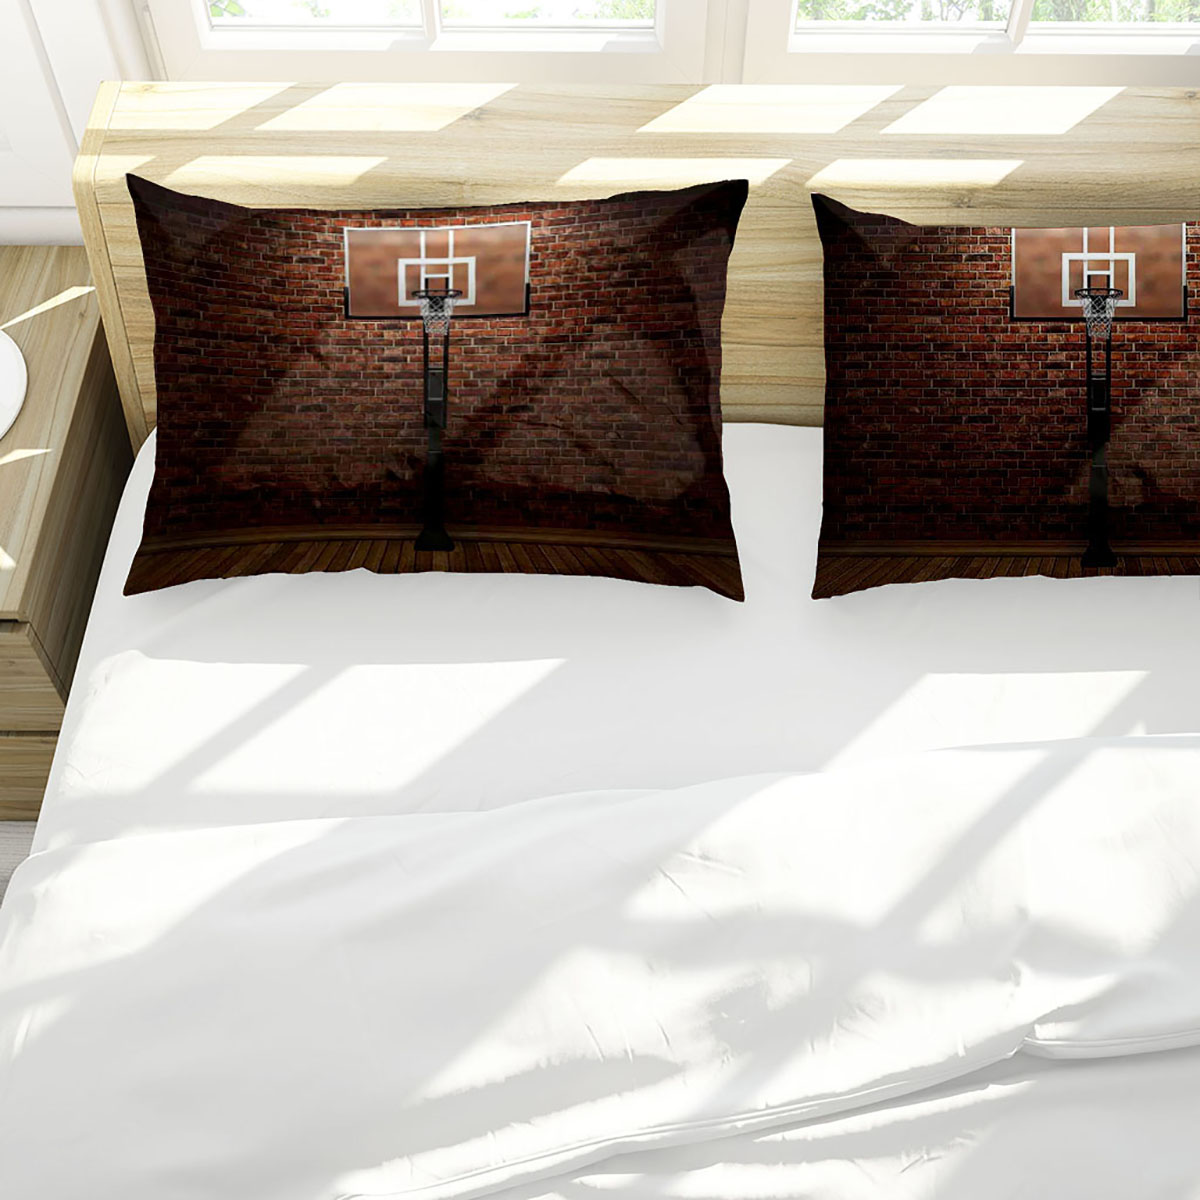 3D-Printed-Football-Basketball-Bowling-GA-Bedding-Set-Bedlinen-Duvet-Cover-Pillowcases-for-Bedding-S-1788703-6